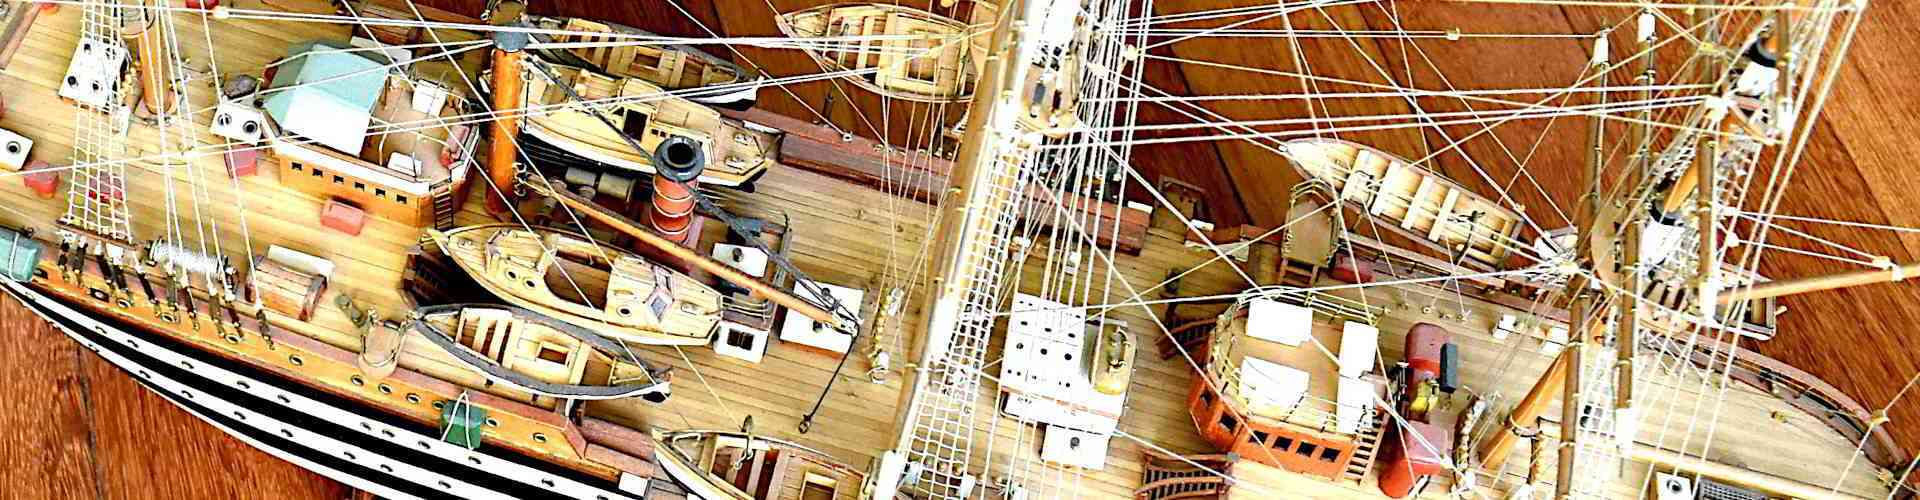 Modell eines historischen Segelschiffs